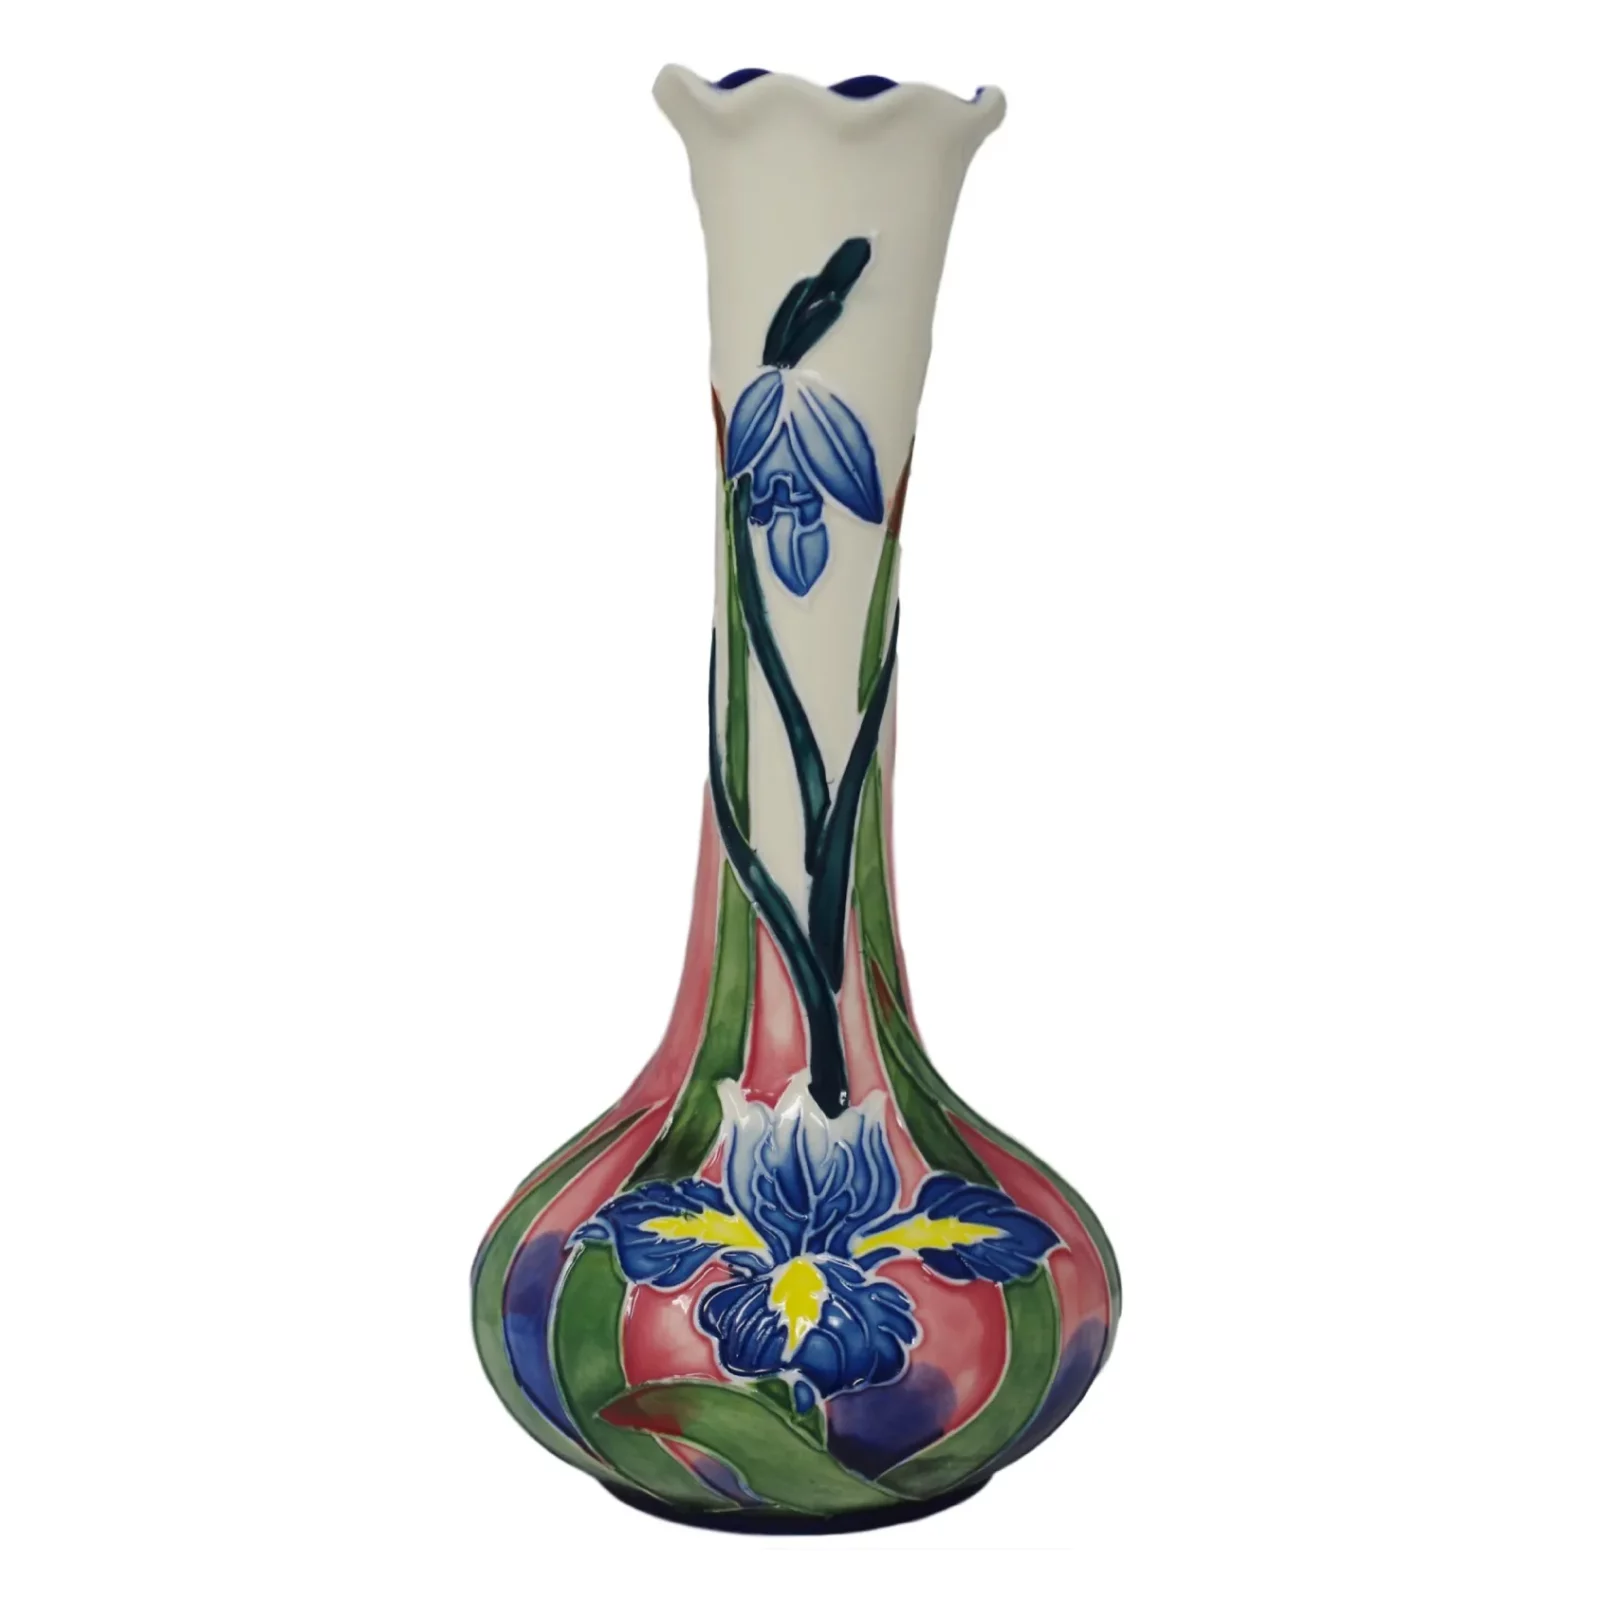 blue iris small vase with tube lining bud shape